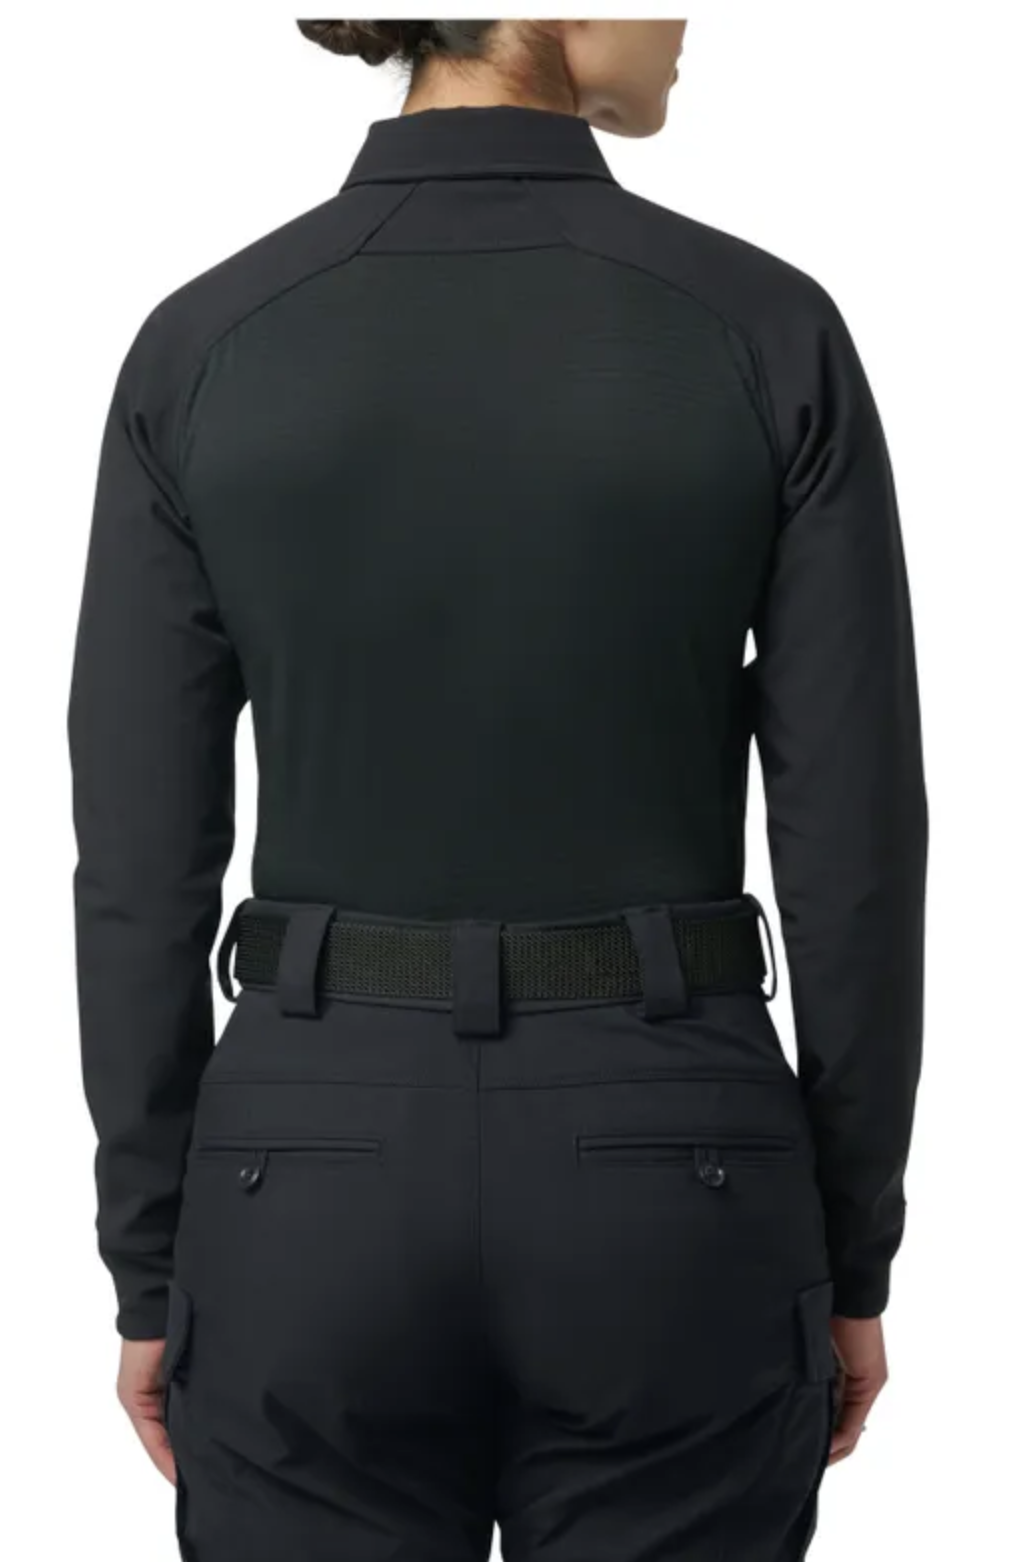 5.11 - Women's Rapid PDU® CLD Long Sleeve Shirt - Midnight Navy (750)